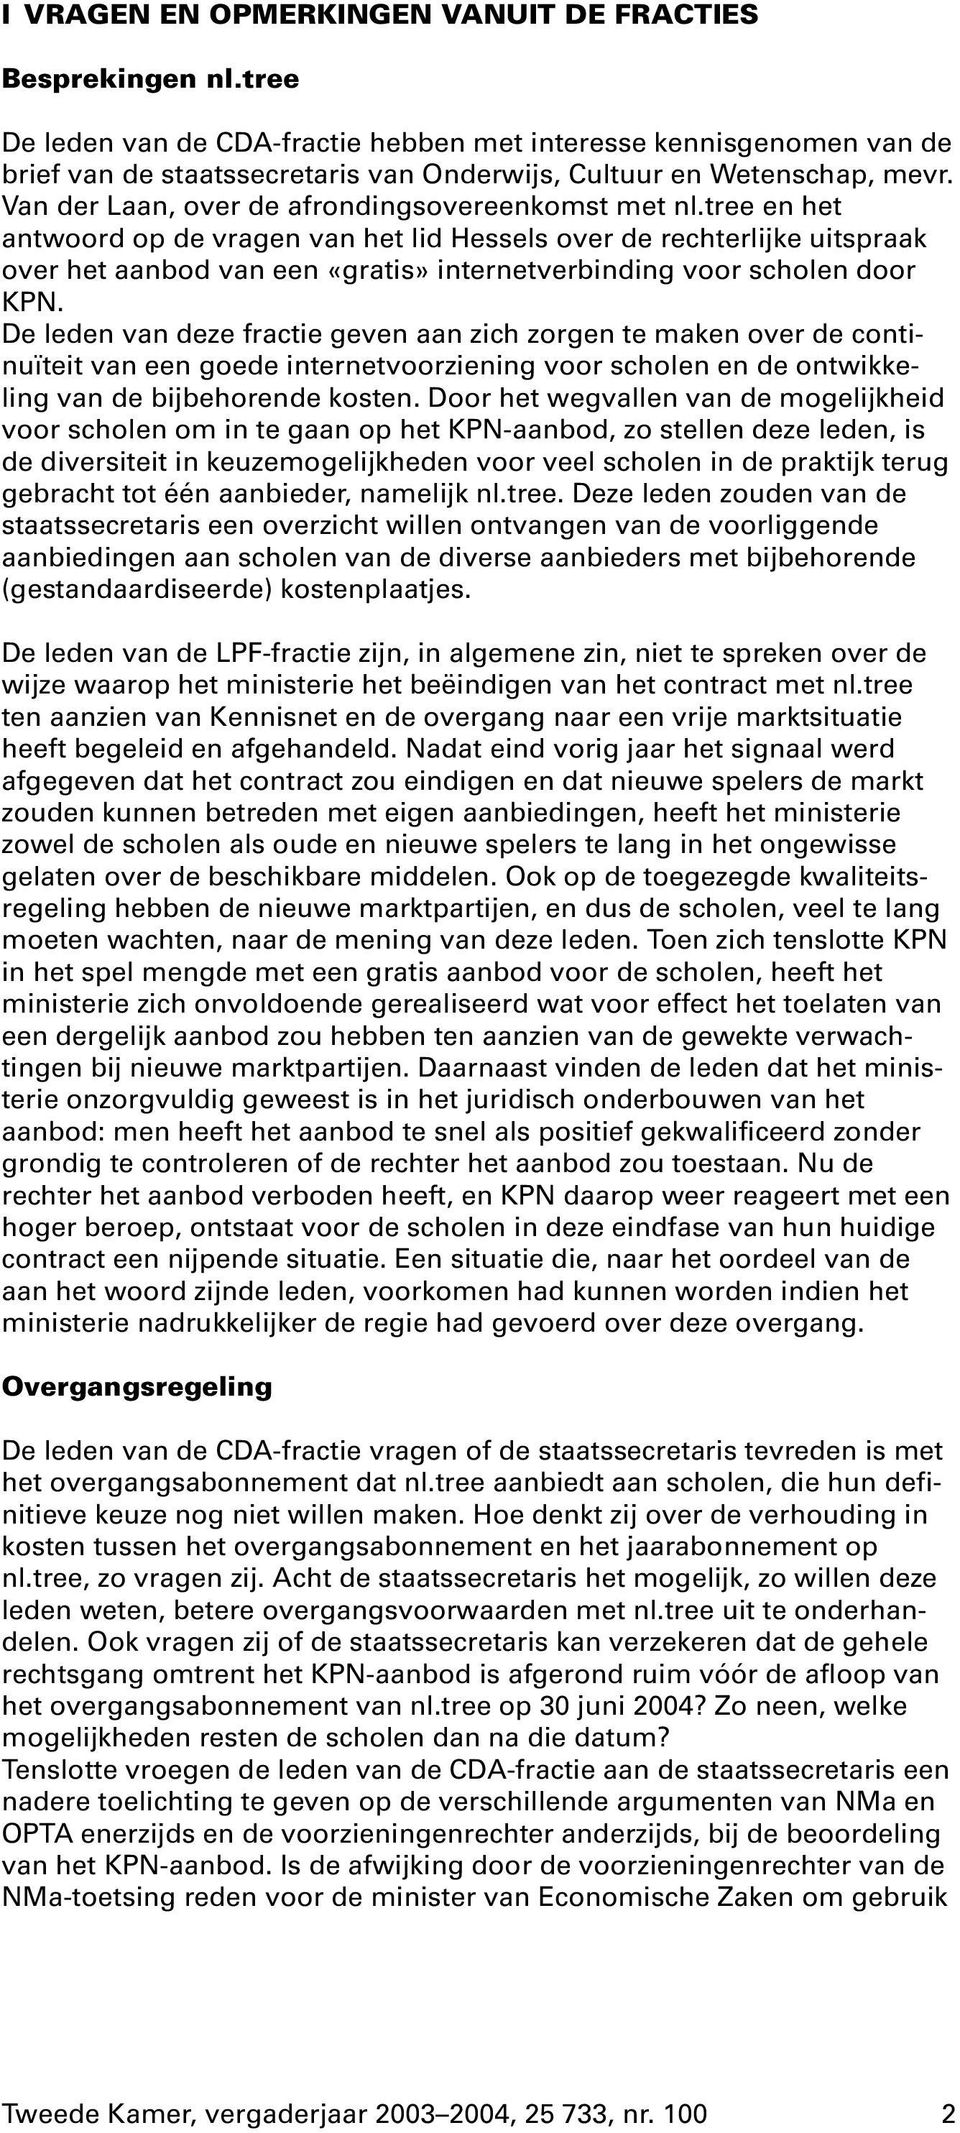 Van der Laan, over de afrondingsovereenkomst met nl.